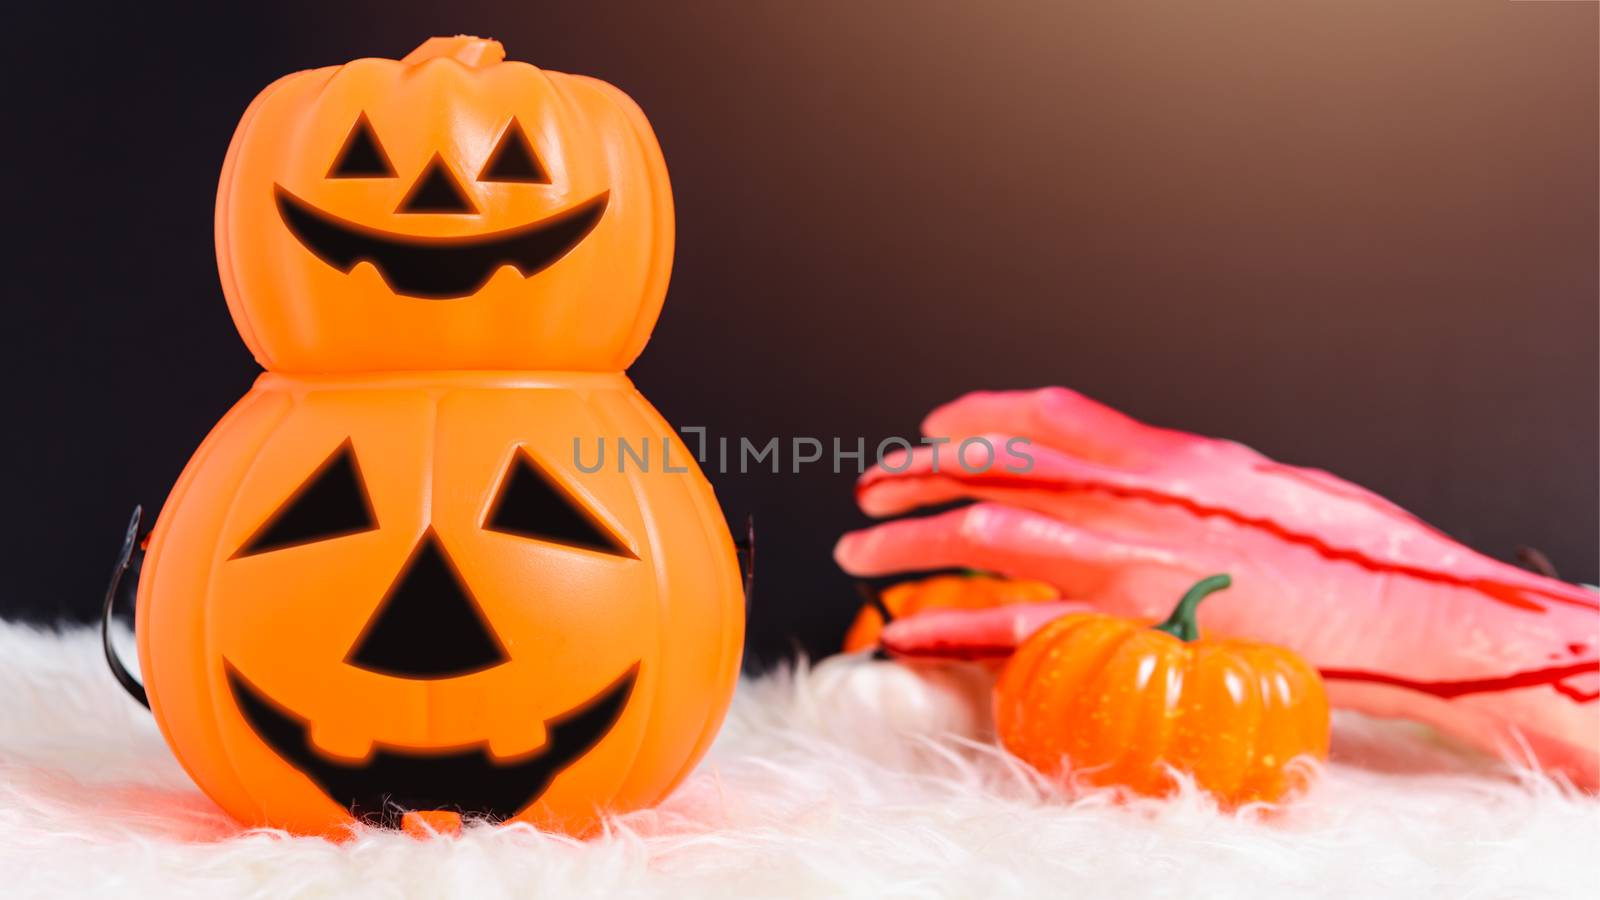 Stack Pumpkin Jack creepy in Halloween day concept by Sorapop